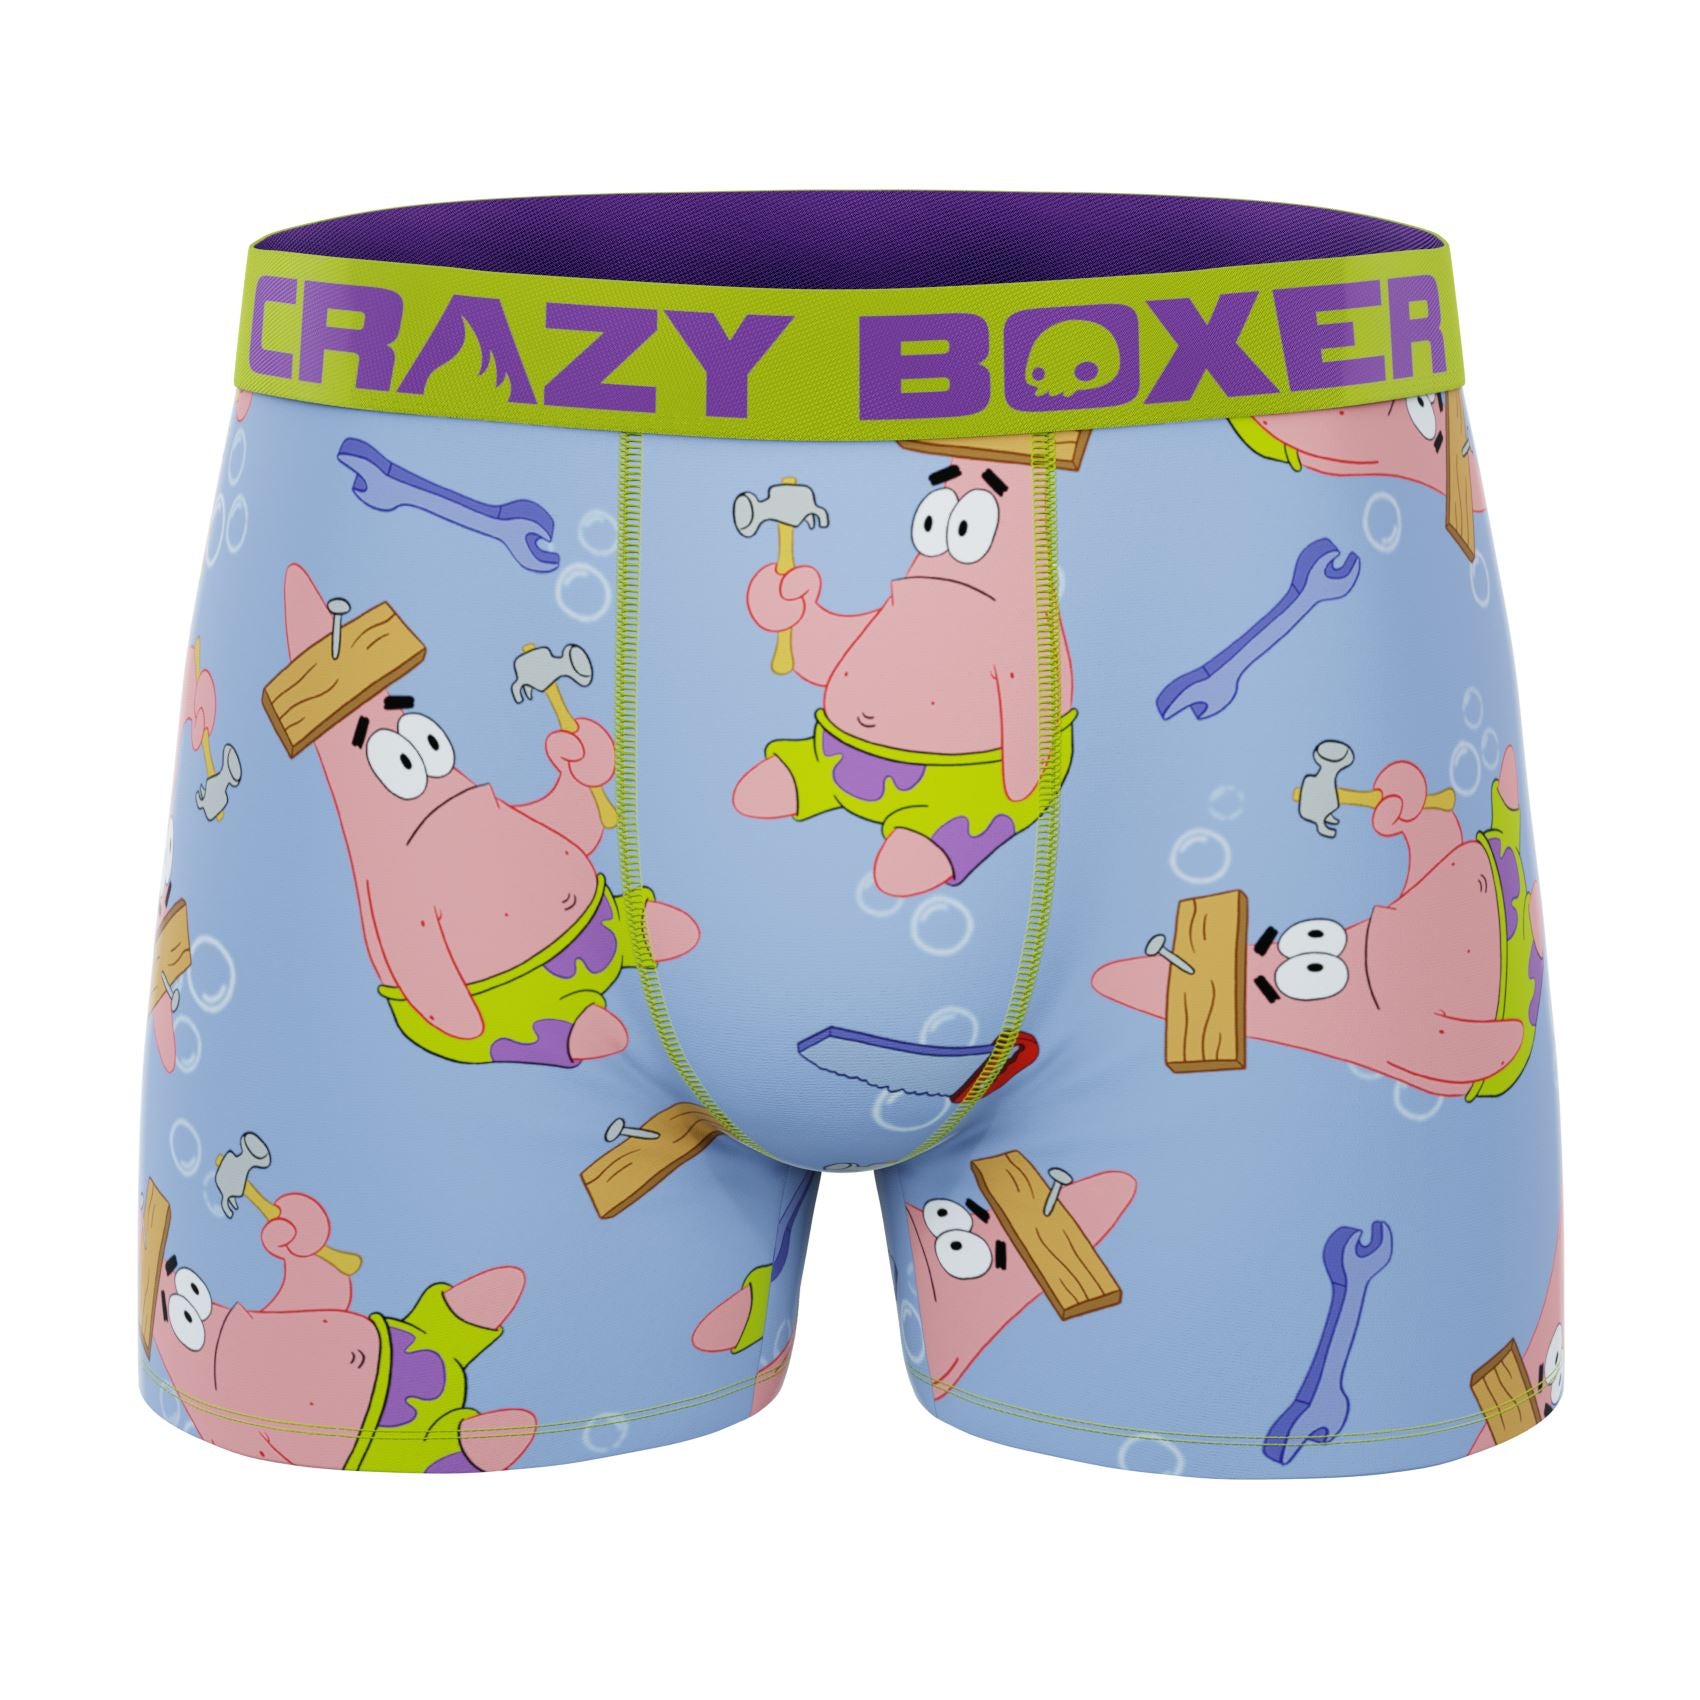 Spongebob Squarepants Underwear Boys Large Size 10 3-Pack Athletic Boxer  Briefs 